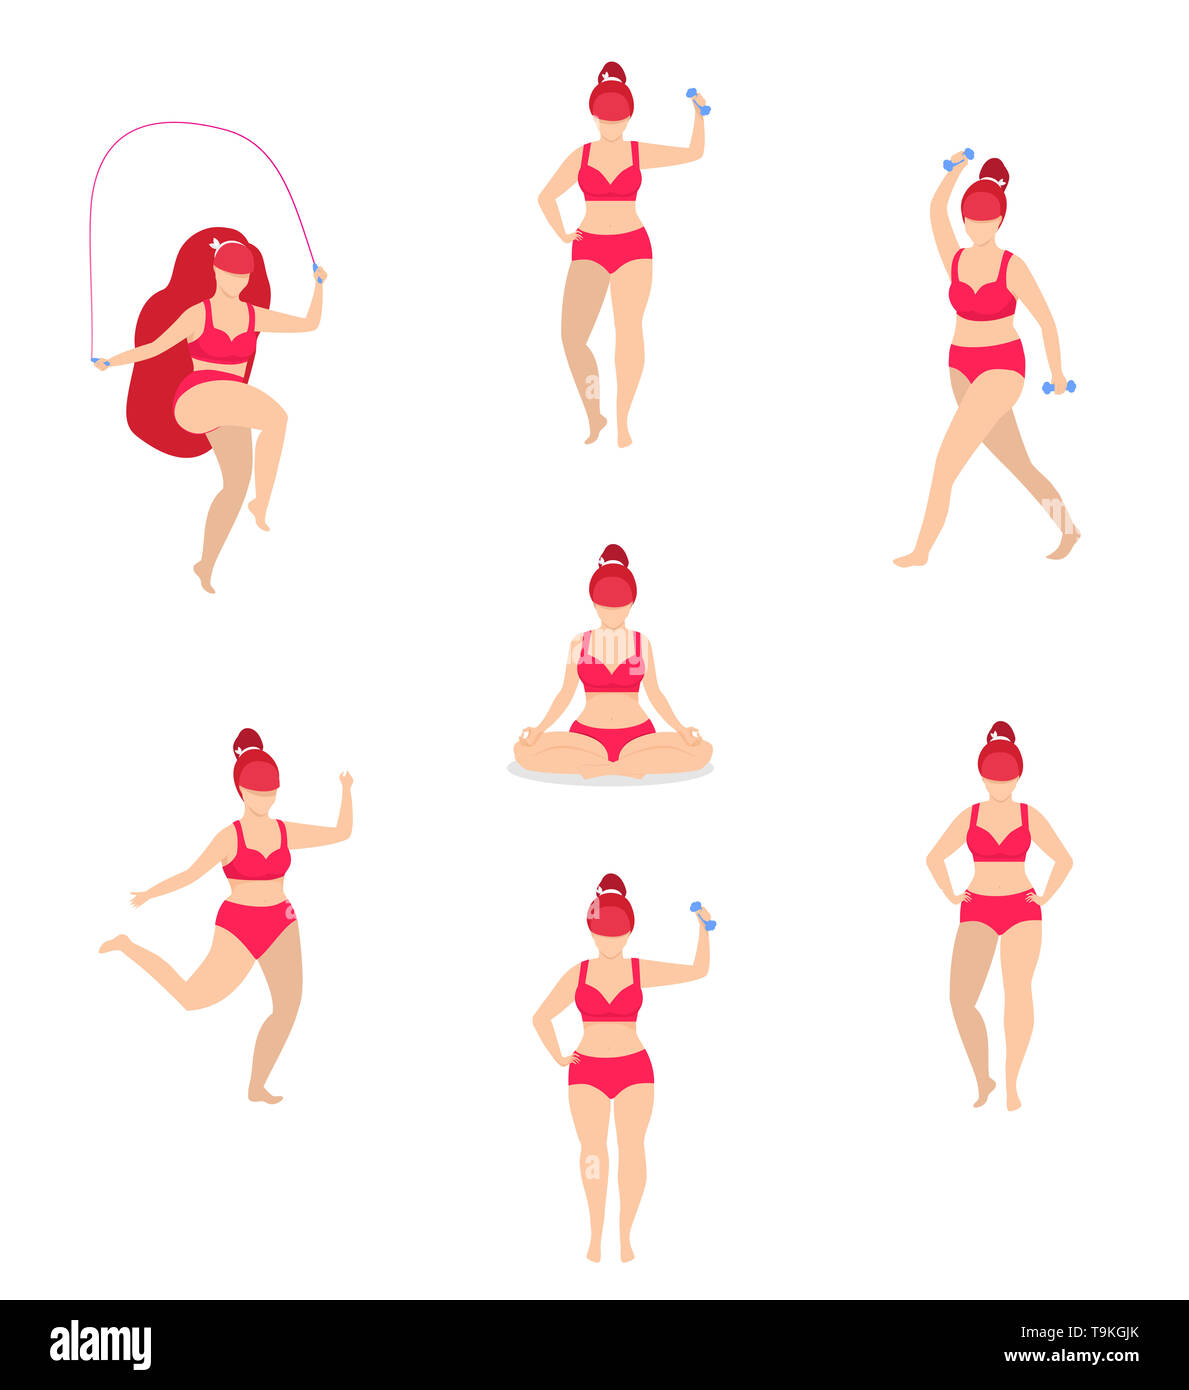 Frau Sport Aktivitäten gesetzt. Mädchen tun, Sport, Yoga, Jogging, Springen mit Seil, Fitness, Hantel Workout, in unterschiedlichen Posen. Cartoon Flach Stockfoto